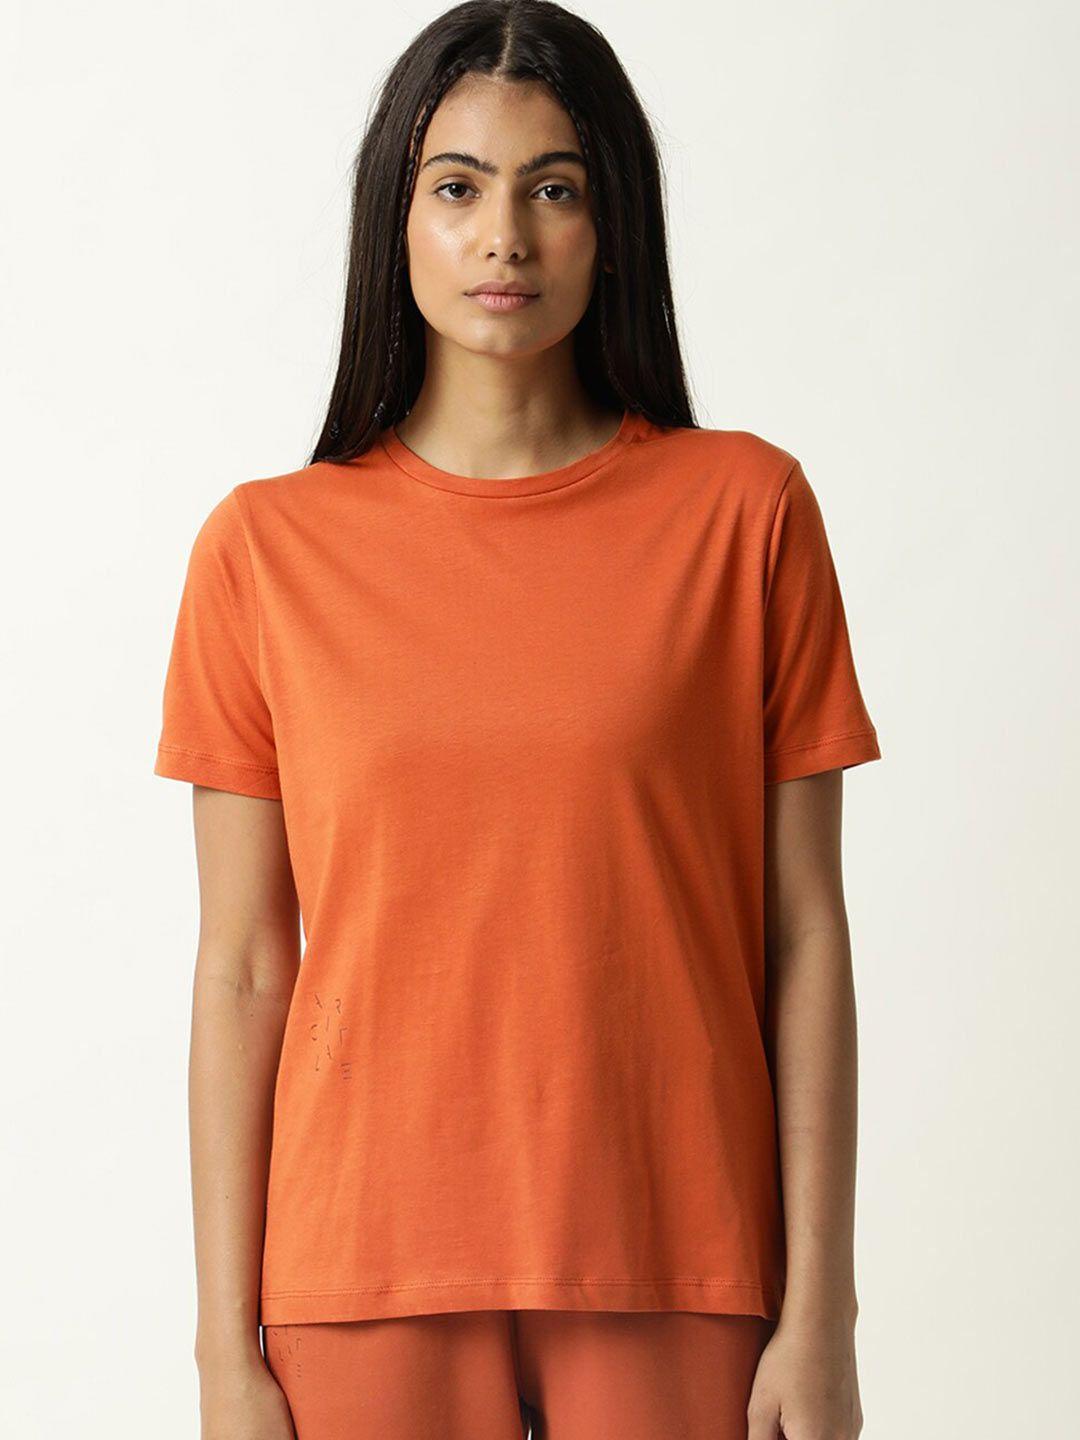 articale women orange solid slim fit cotton t-shirt